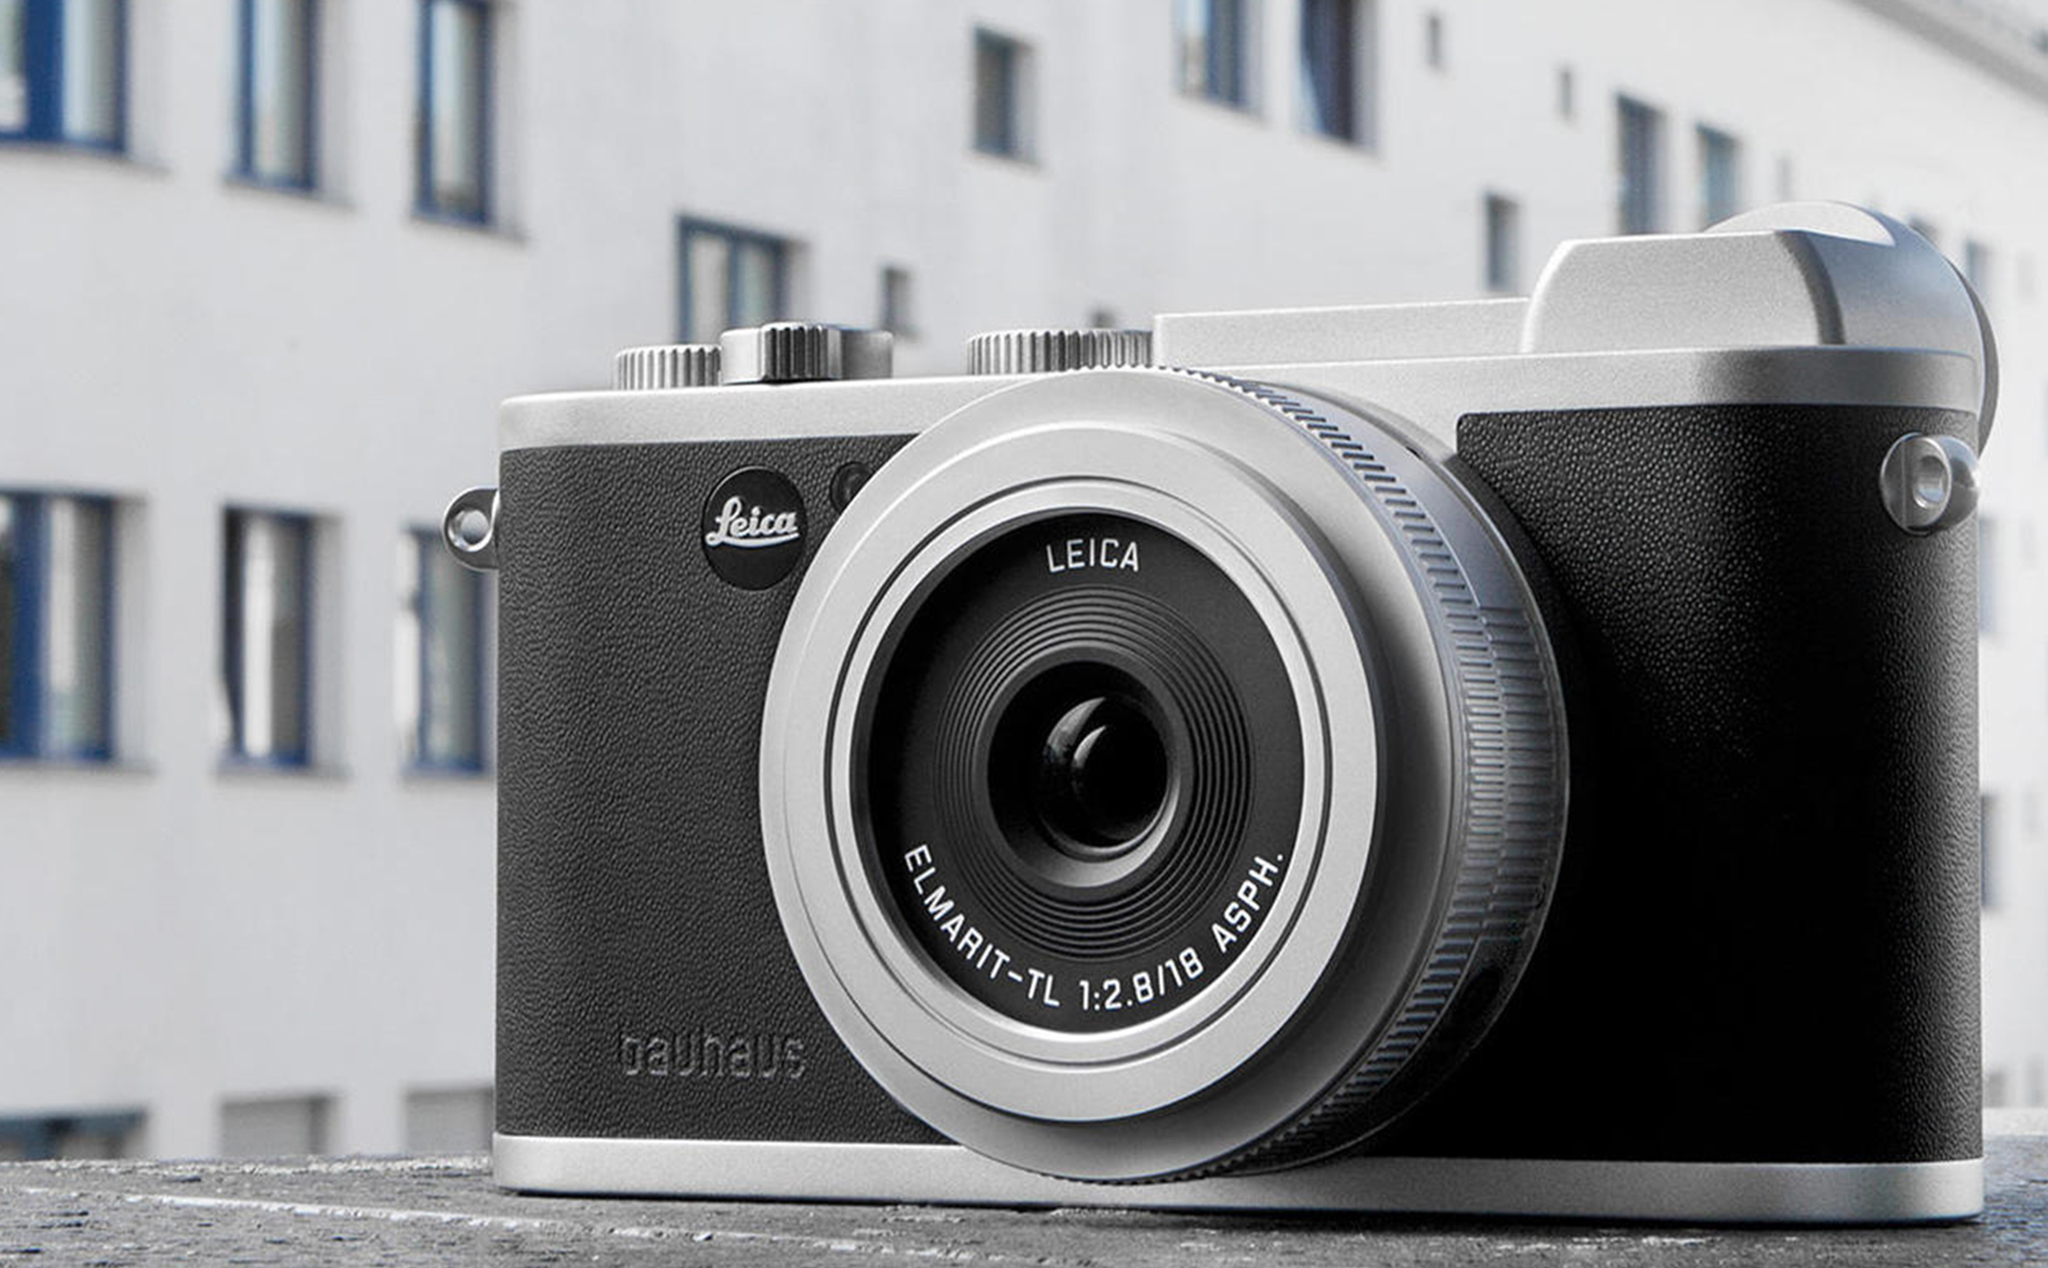 Leica giới thiệu 150 bộ máy phiên bản giới hạn Leica CL “100 Jahre Bauhaus”